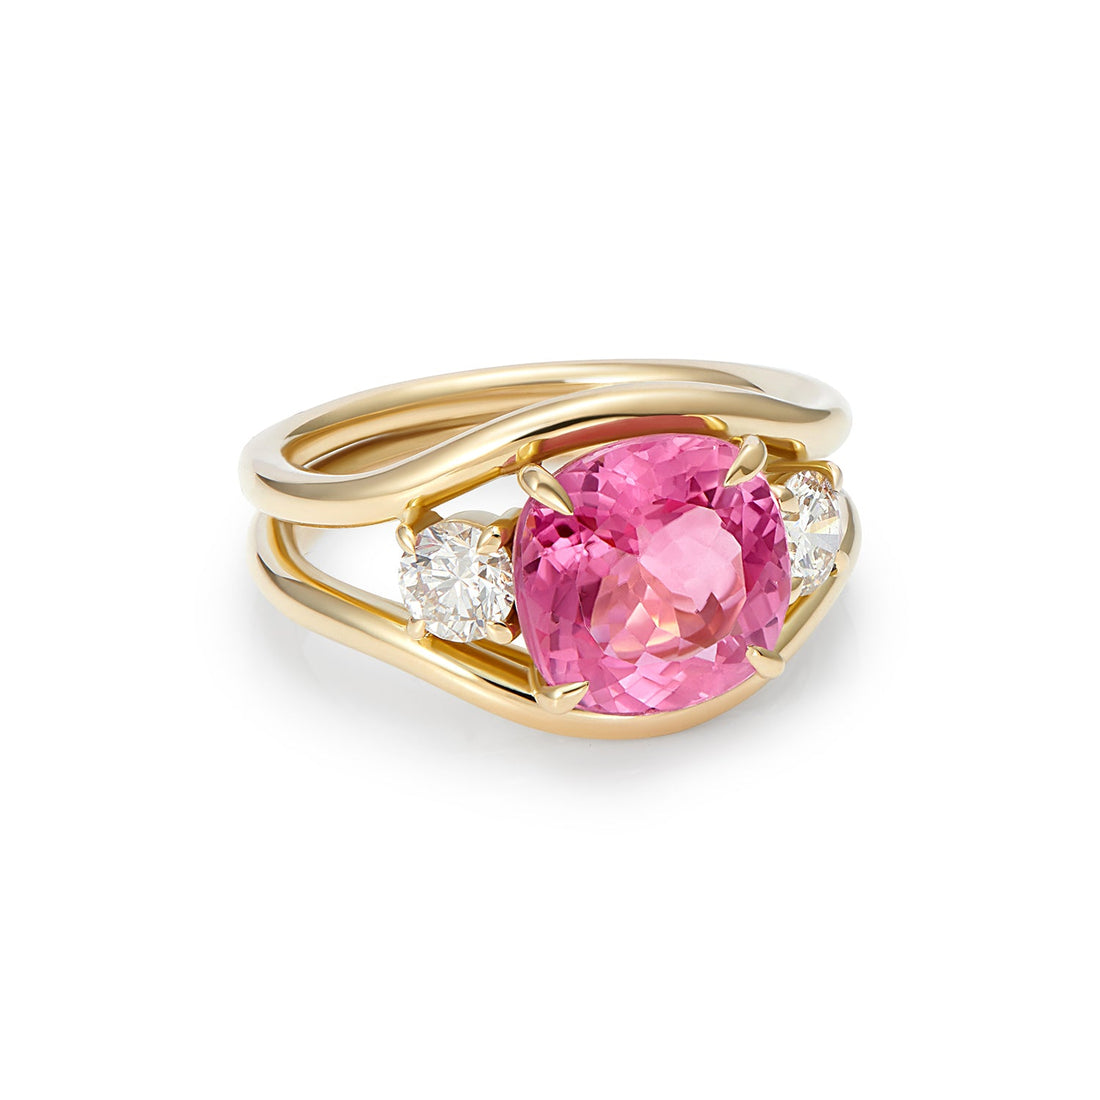 Pink tourmaline and white diamond ring by Minka Jewels | The Cut London